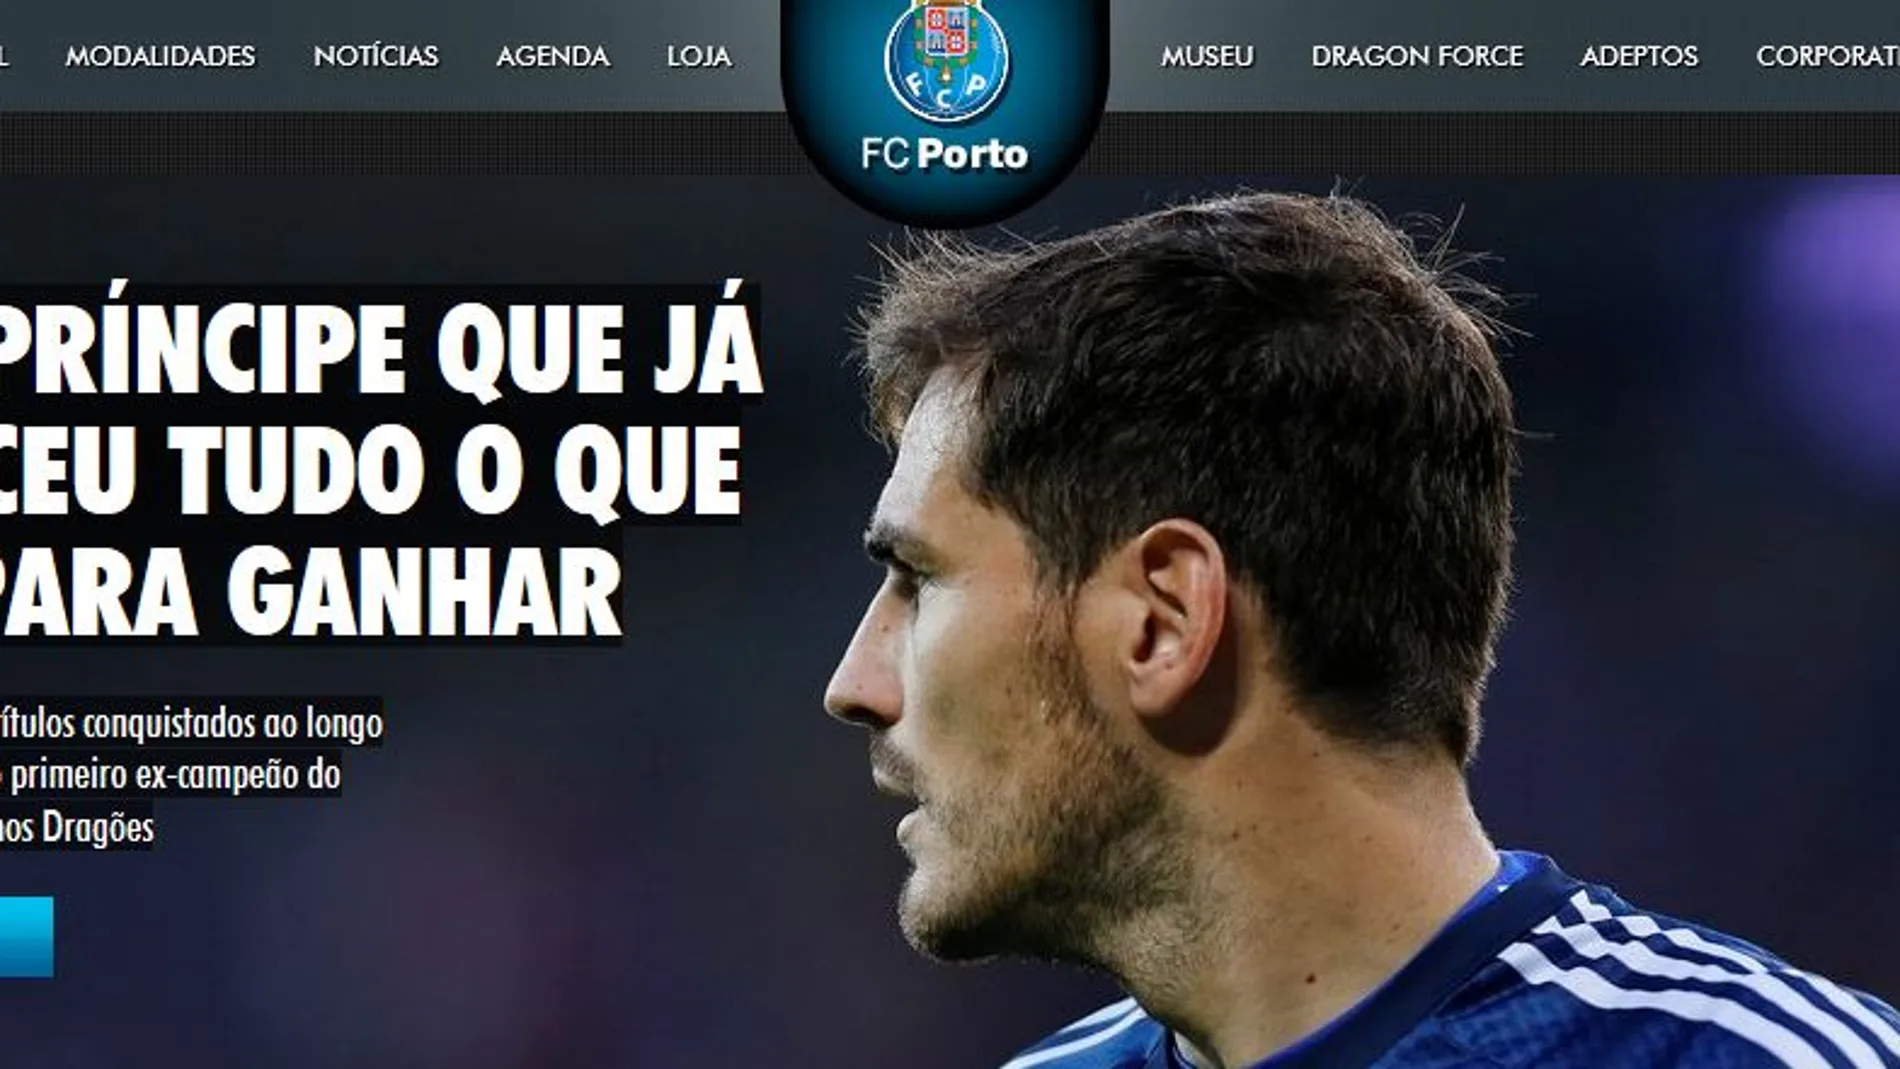 Imagen de Casillas en la web del Oporto